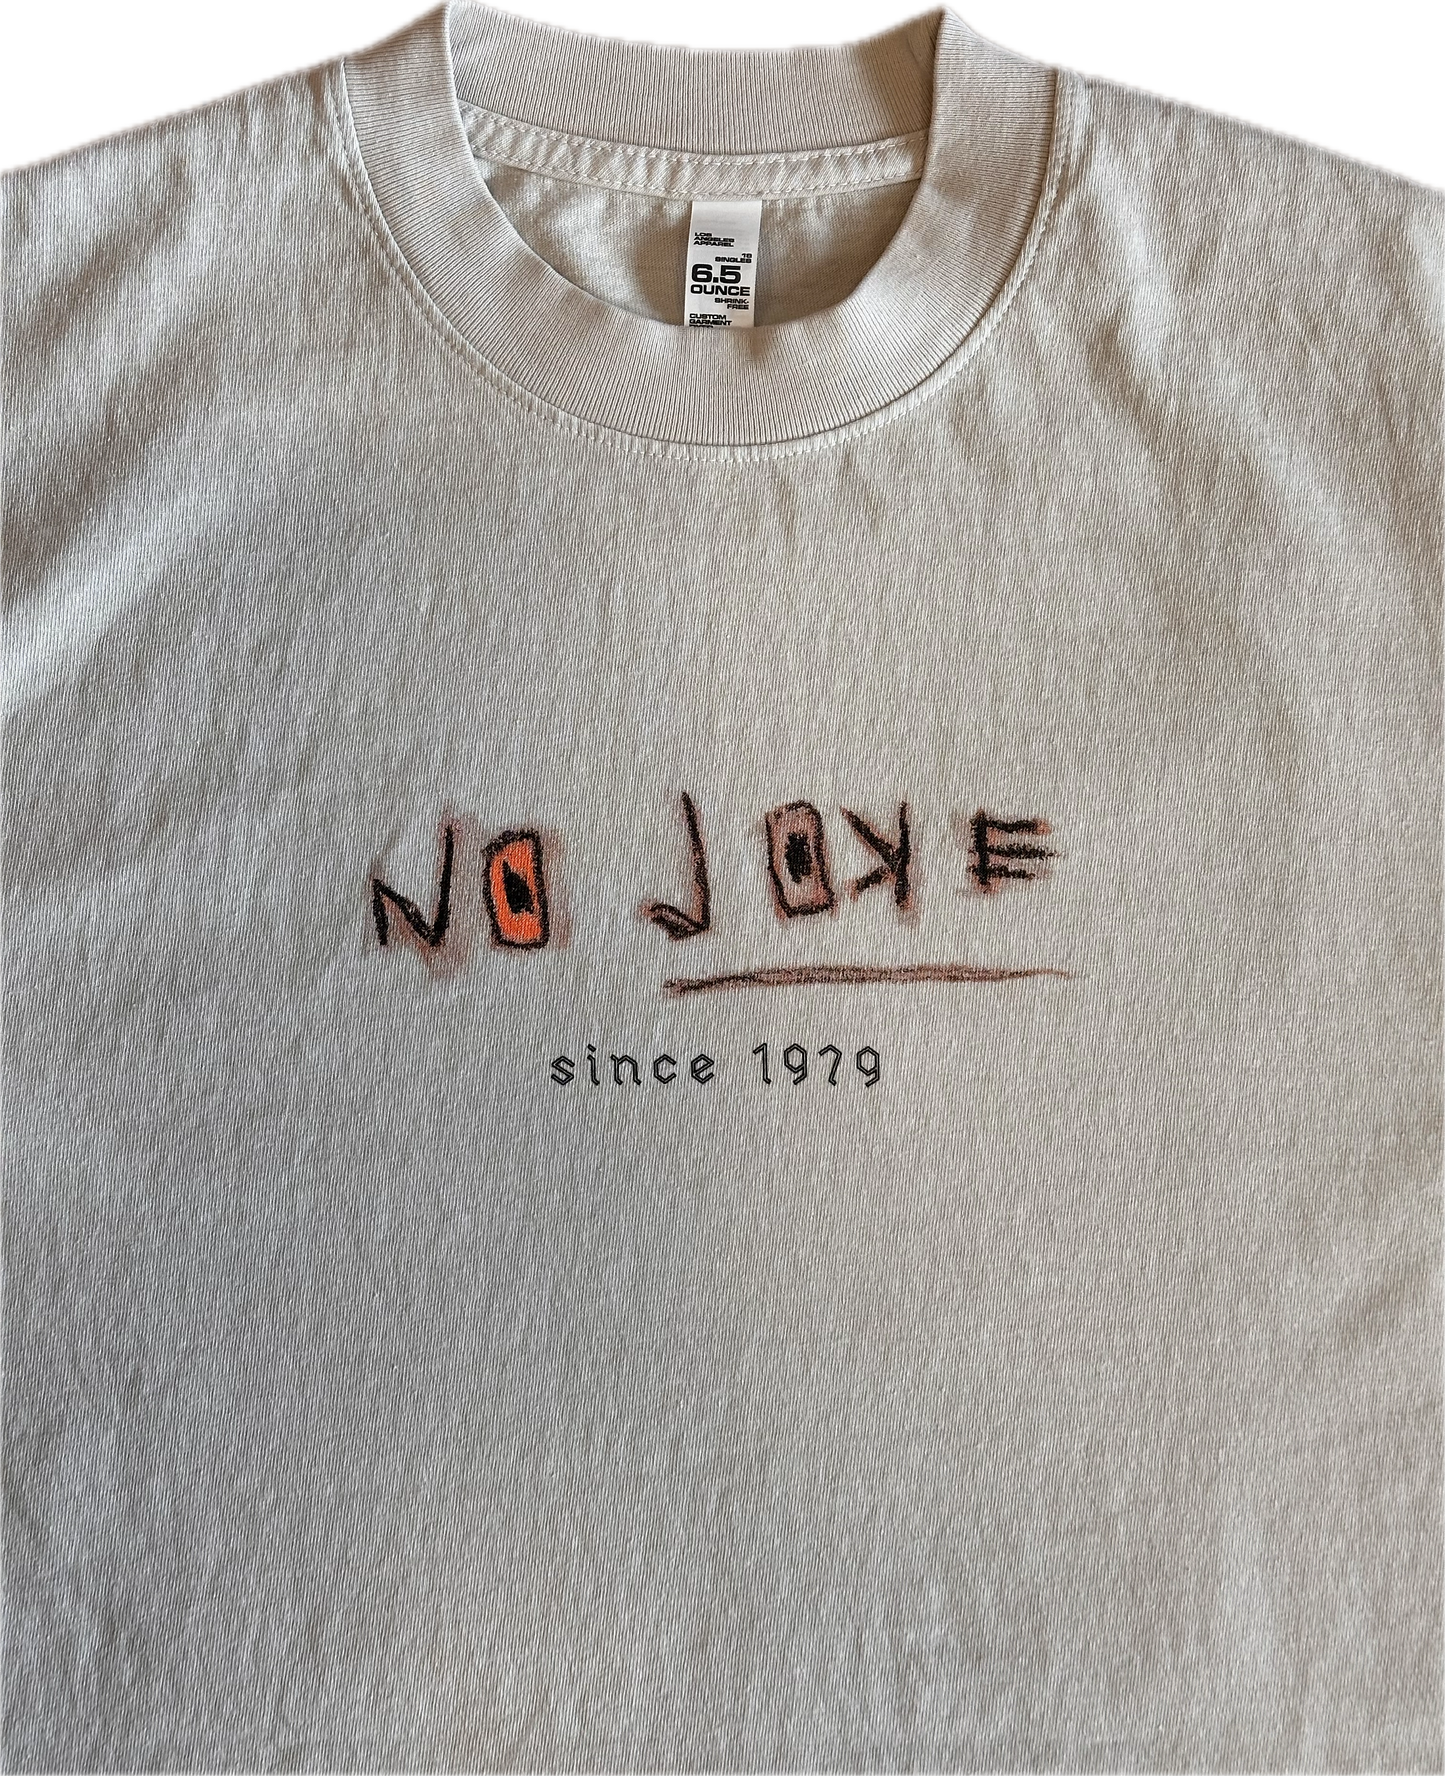 'No Joke' T-Shirt